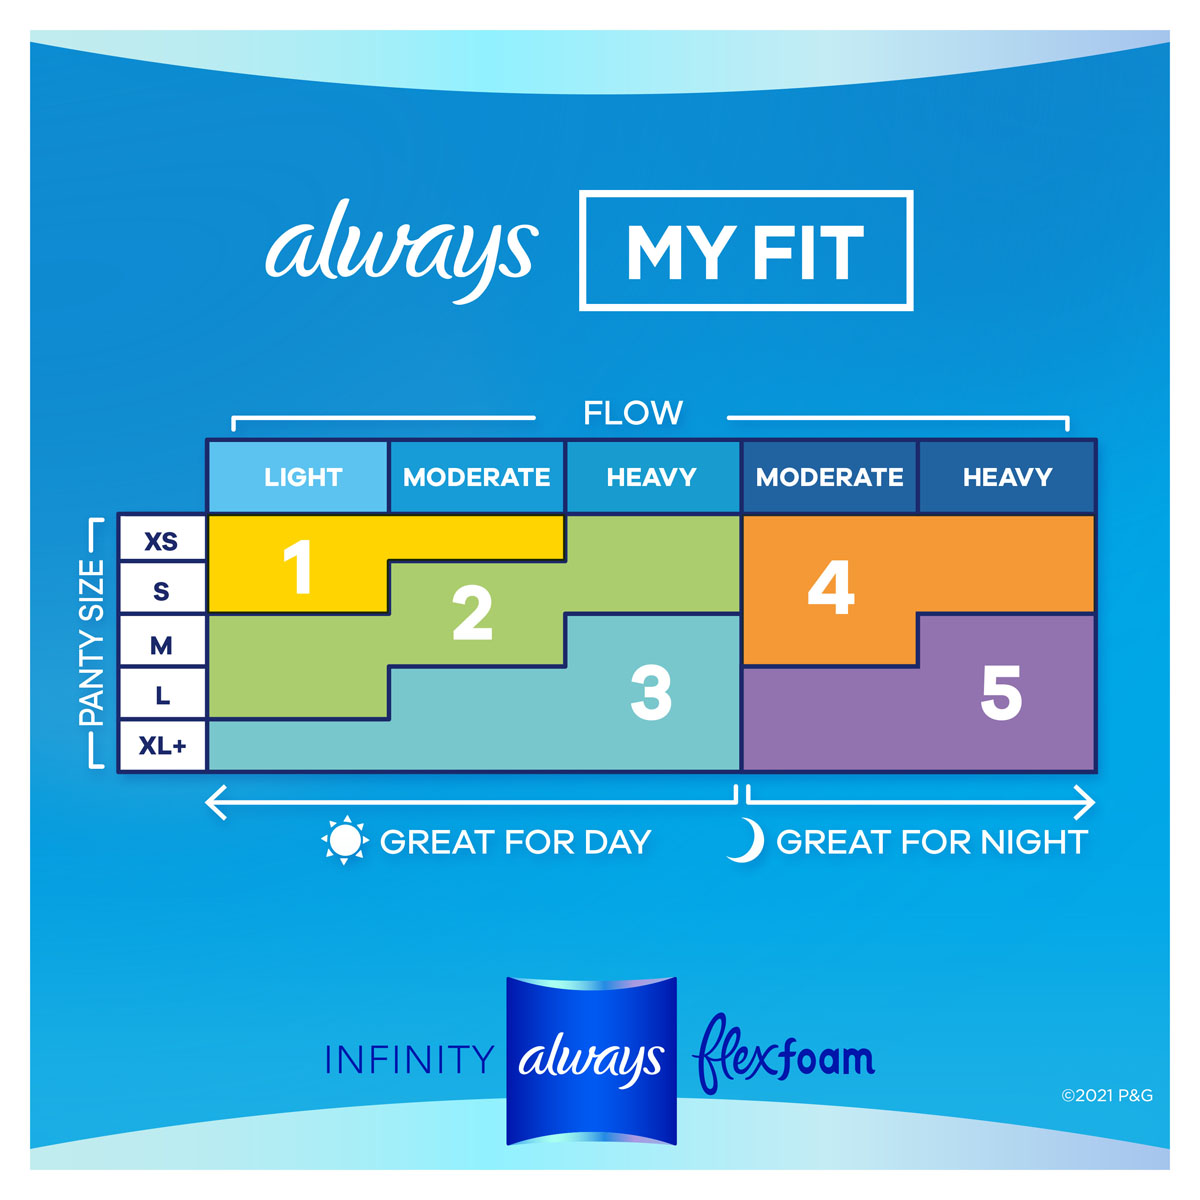 Always-Infinity-FlexFoam-Day-My-Fit